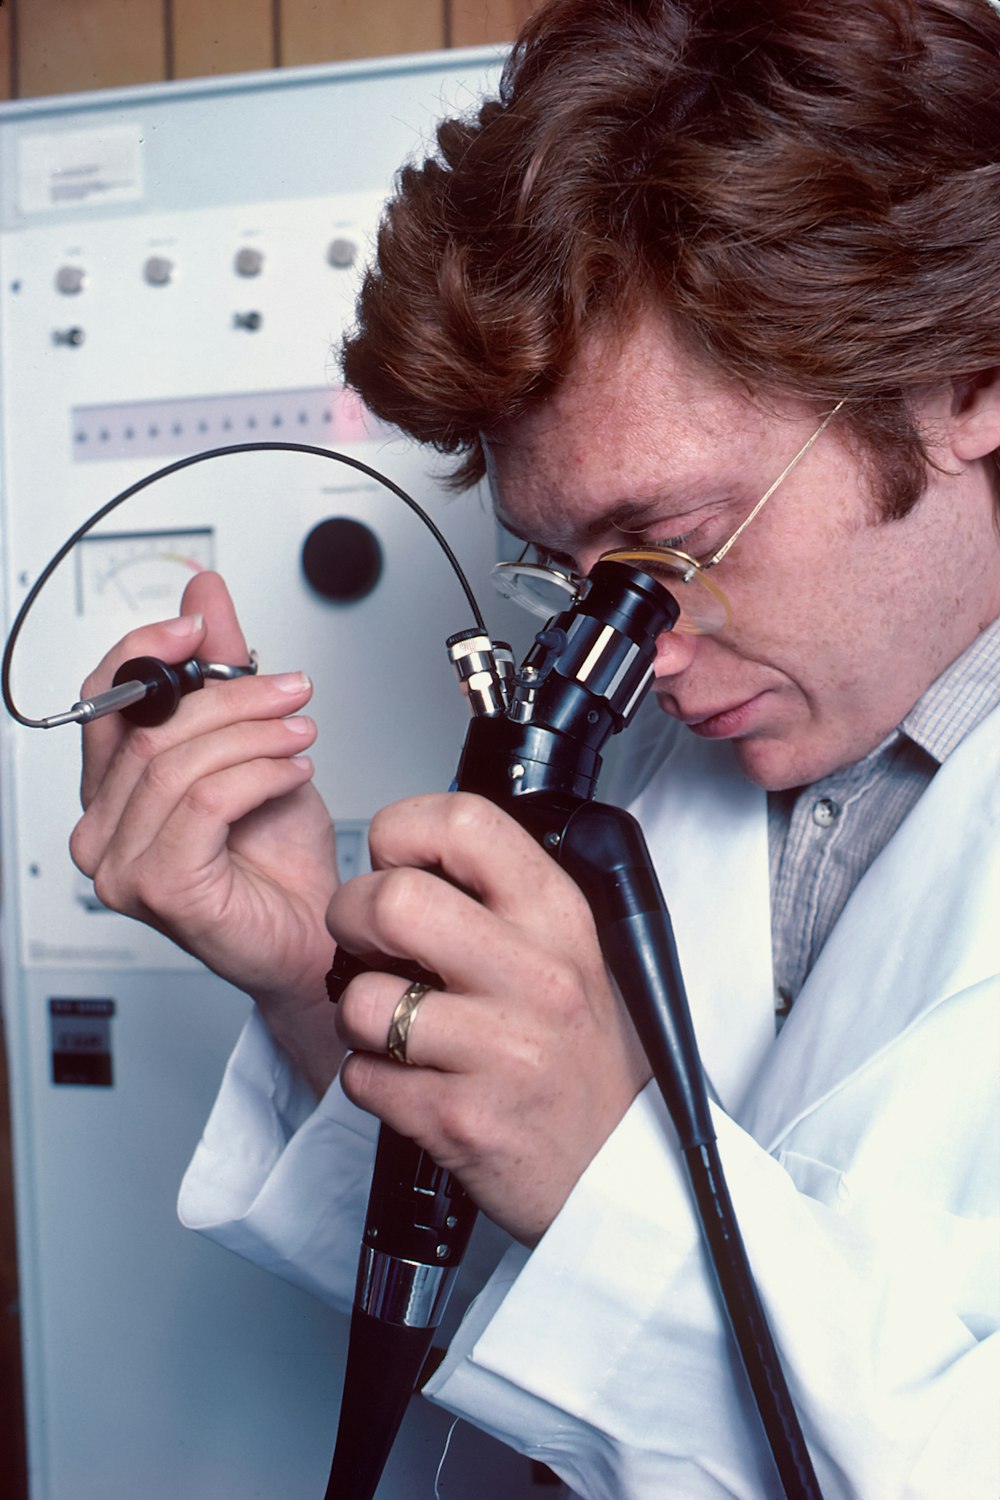 Ein Mann im Laborkittel schaut durch ein Mikroskop